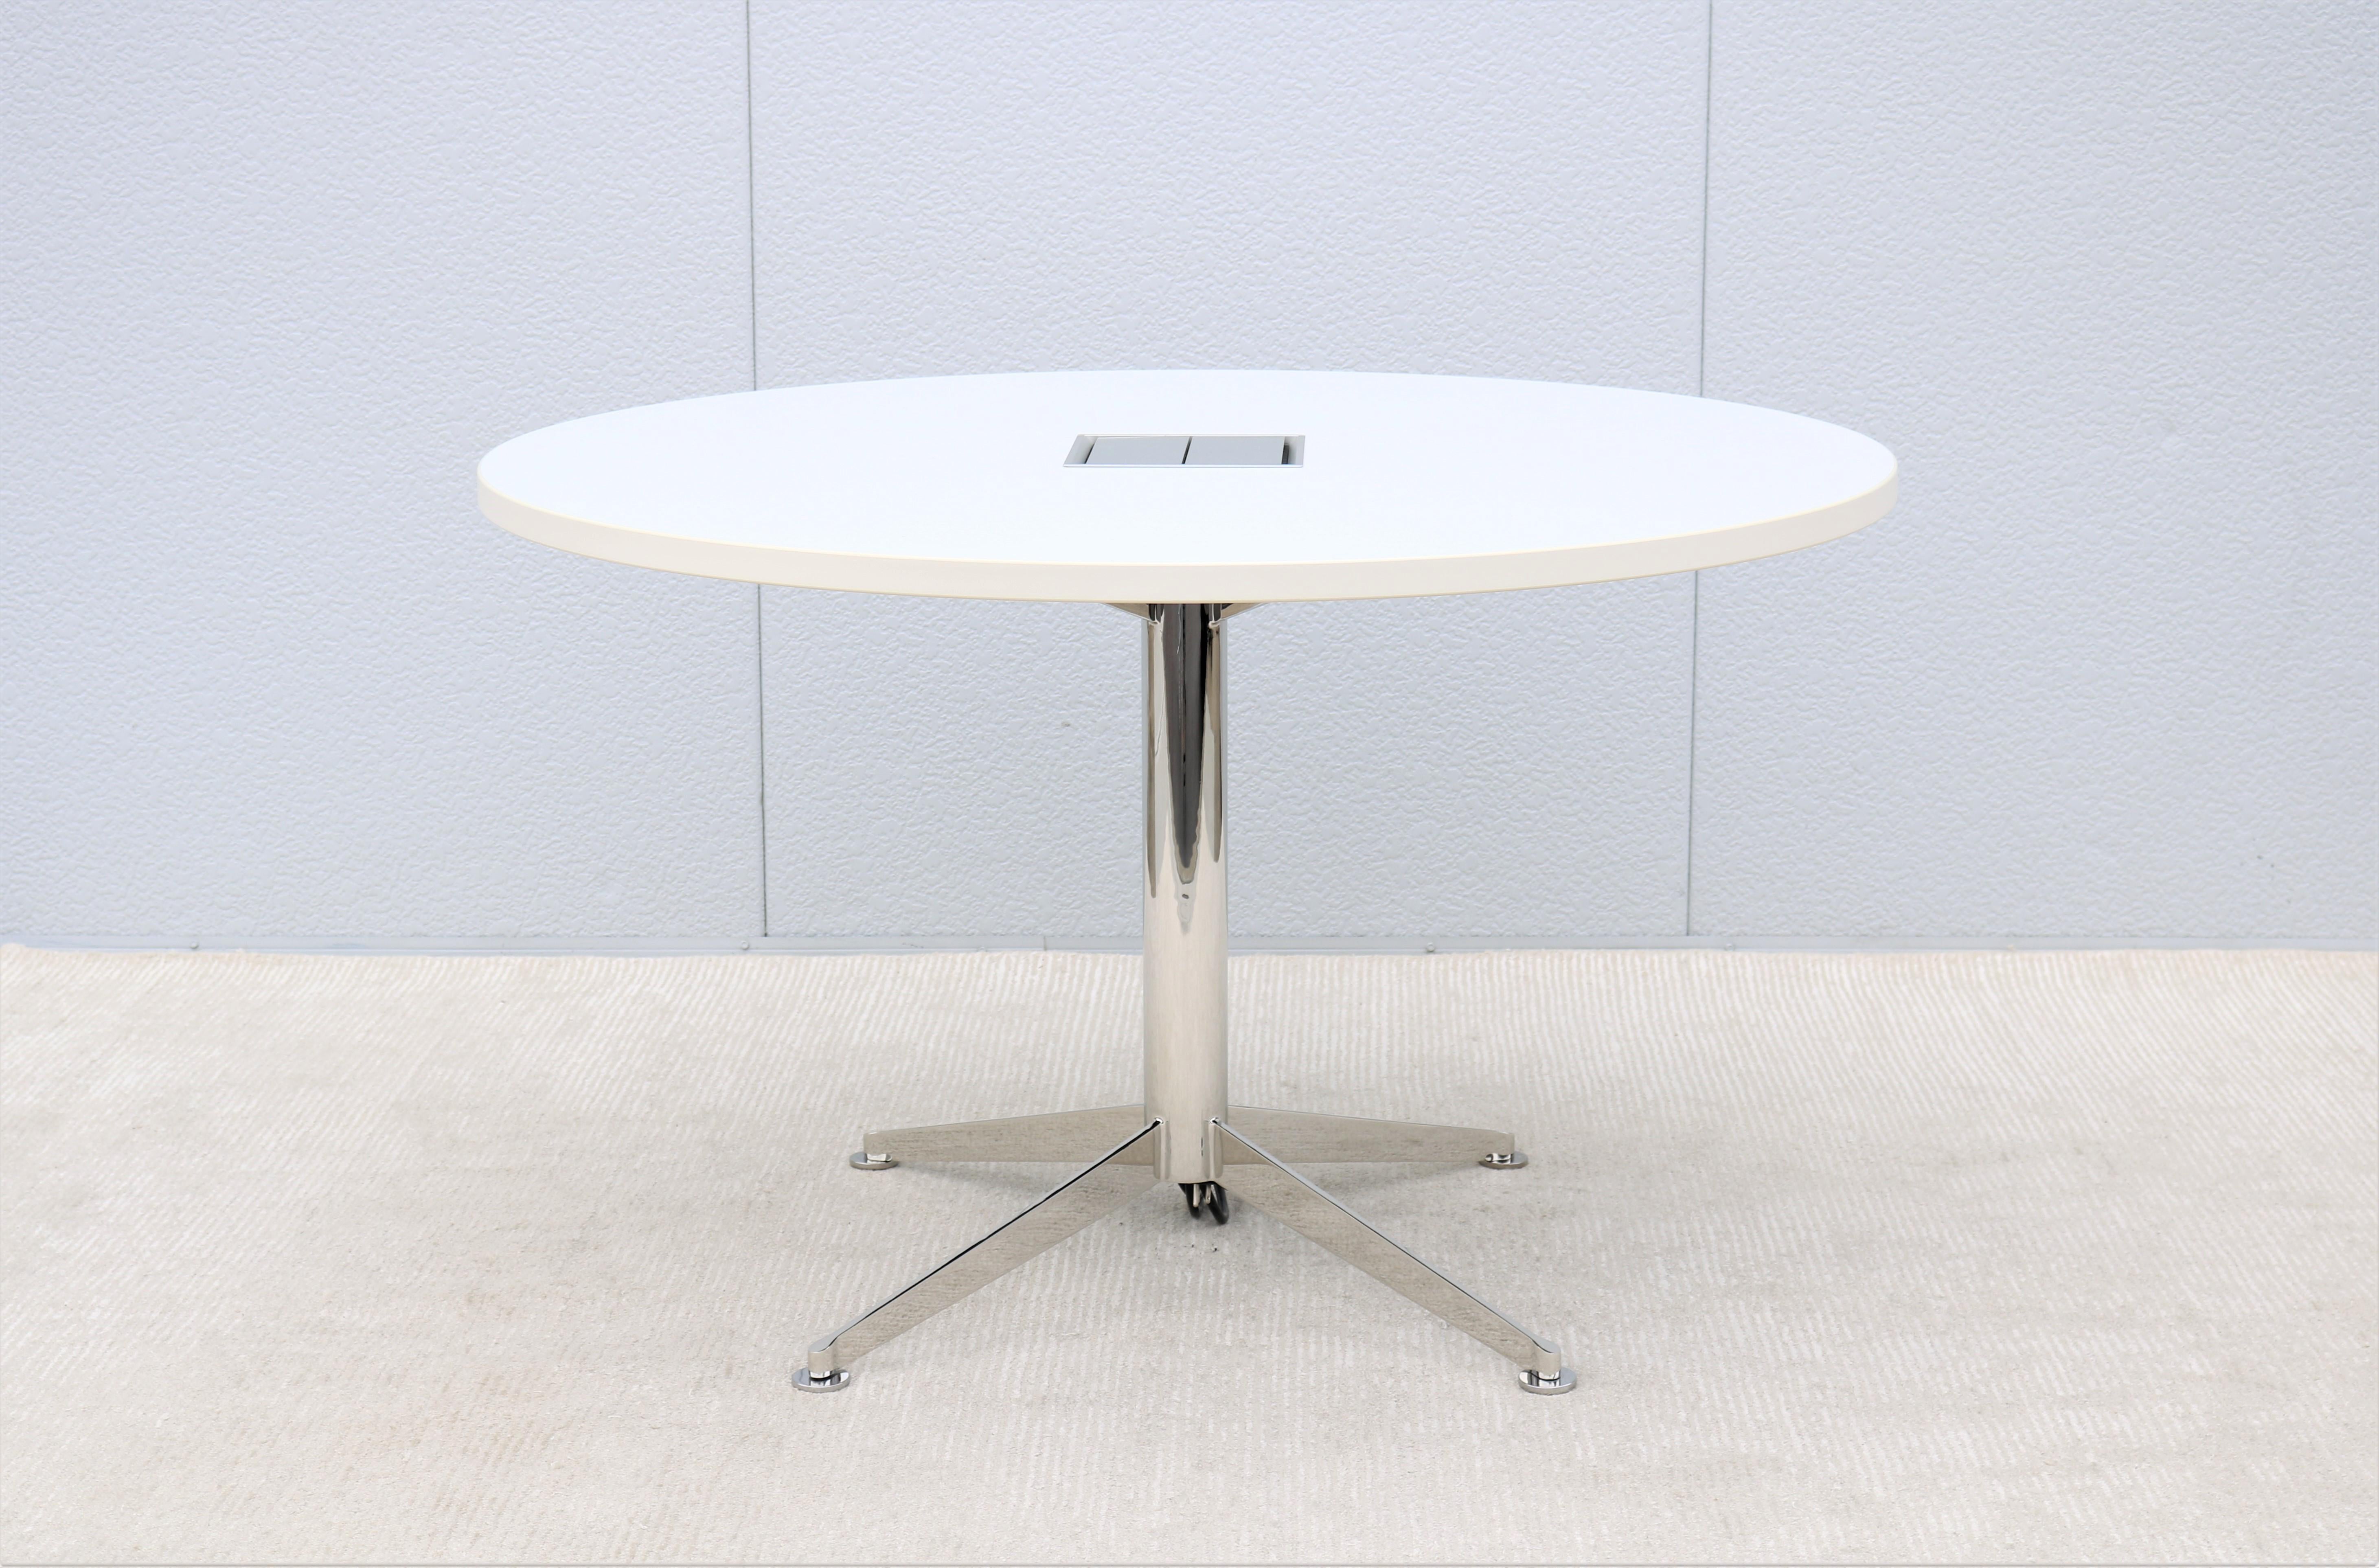 Table de conférence ou de travail Elegant and sleek Circuit par Bernhardt Design.
Cette fabuleuse table a la force et la durabilité nécessaires pour offrir des performances fiables.
La beauté moderne et le design intelligent de la table Circuit